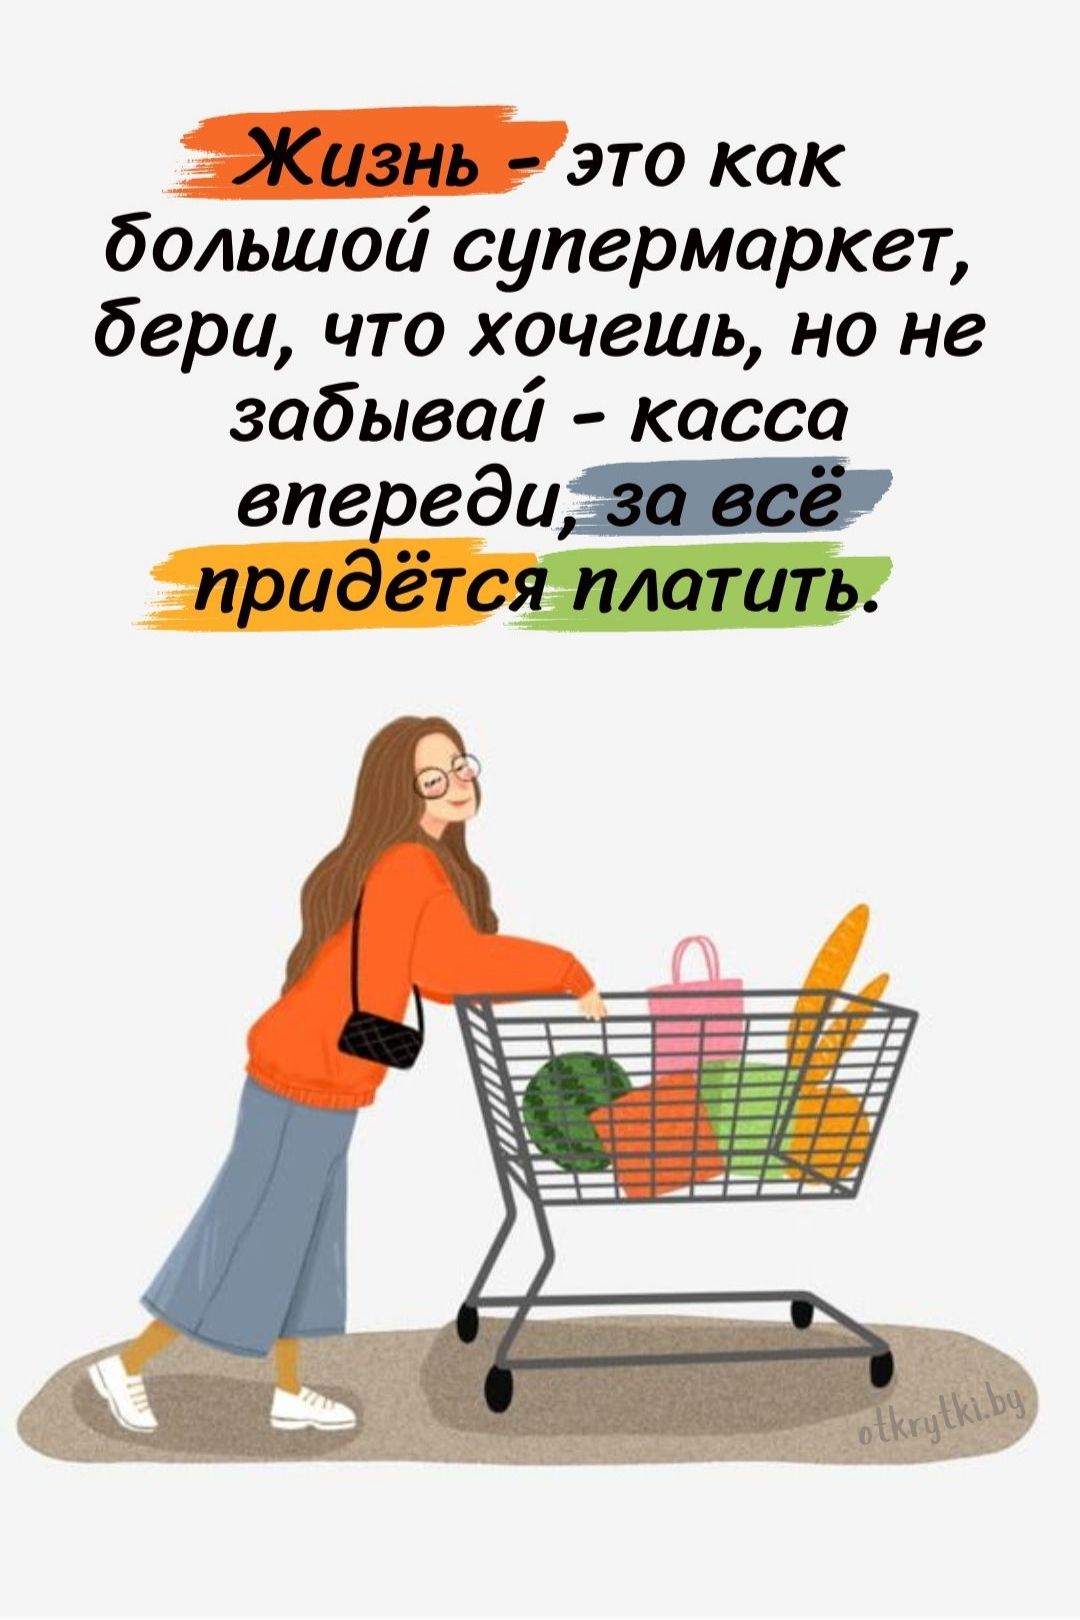 Картинка про жизнь и большой супермаркет